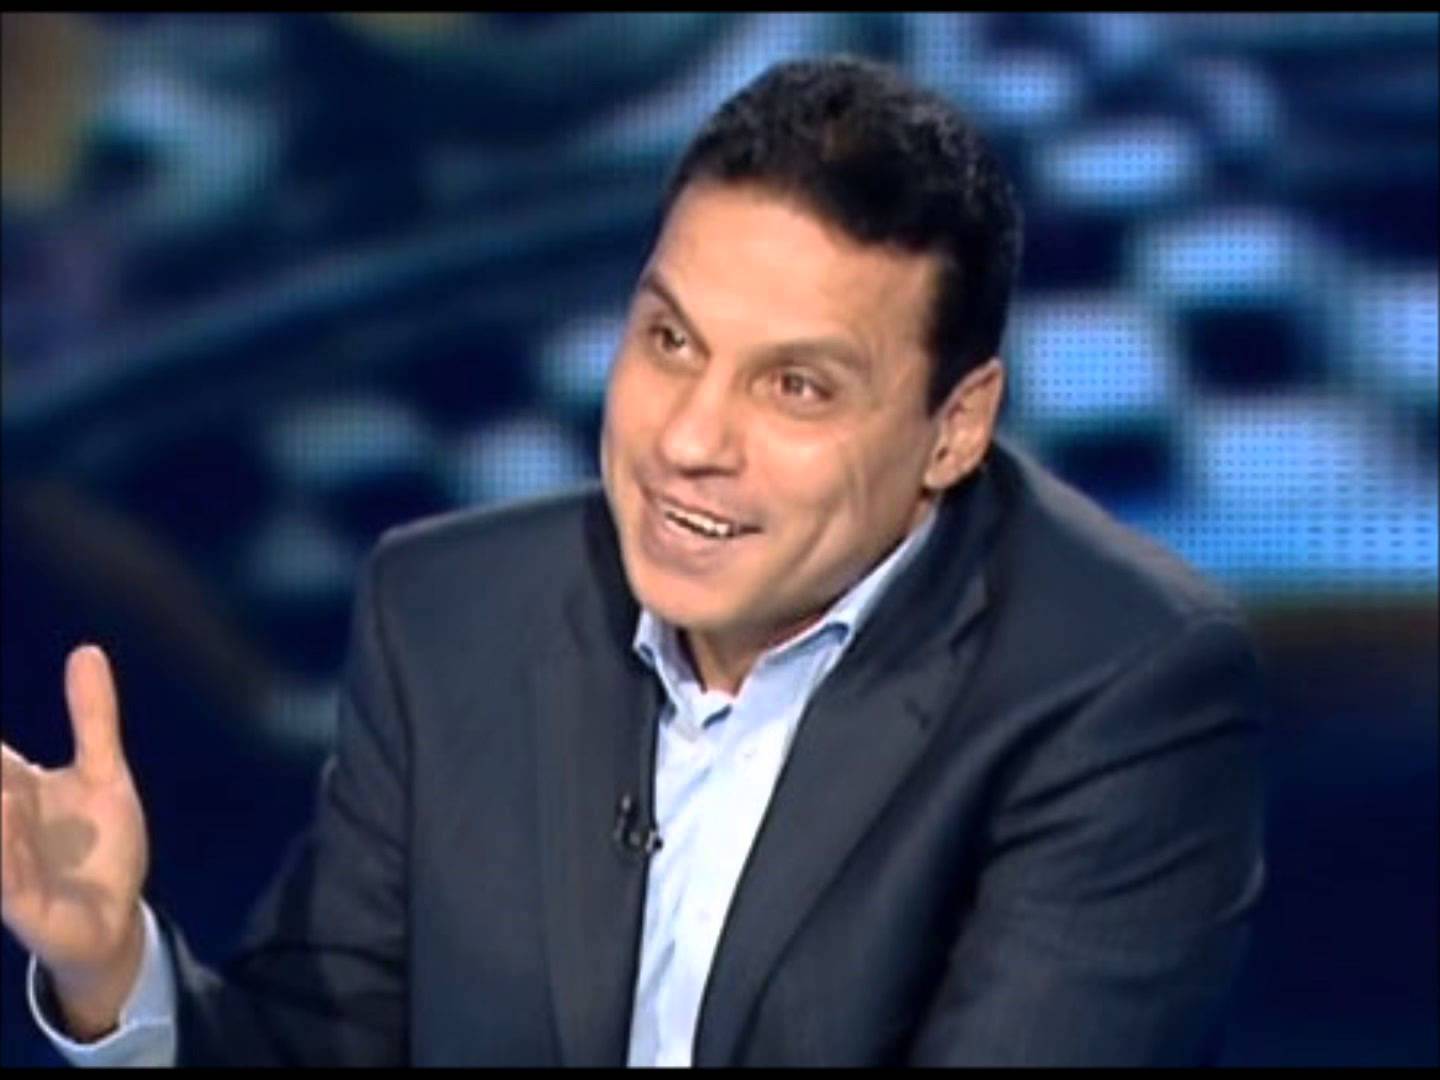    بالفيديو: ماذا قال مستثمر نادي الأهرام للبدرى بشأن المنتخب؟!